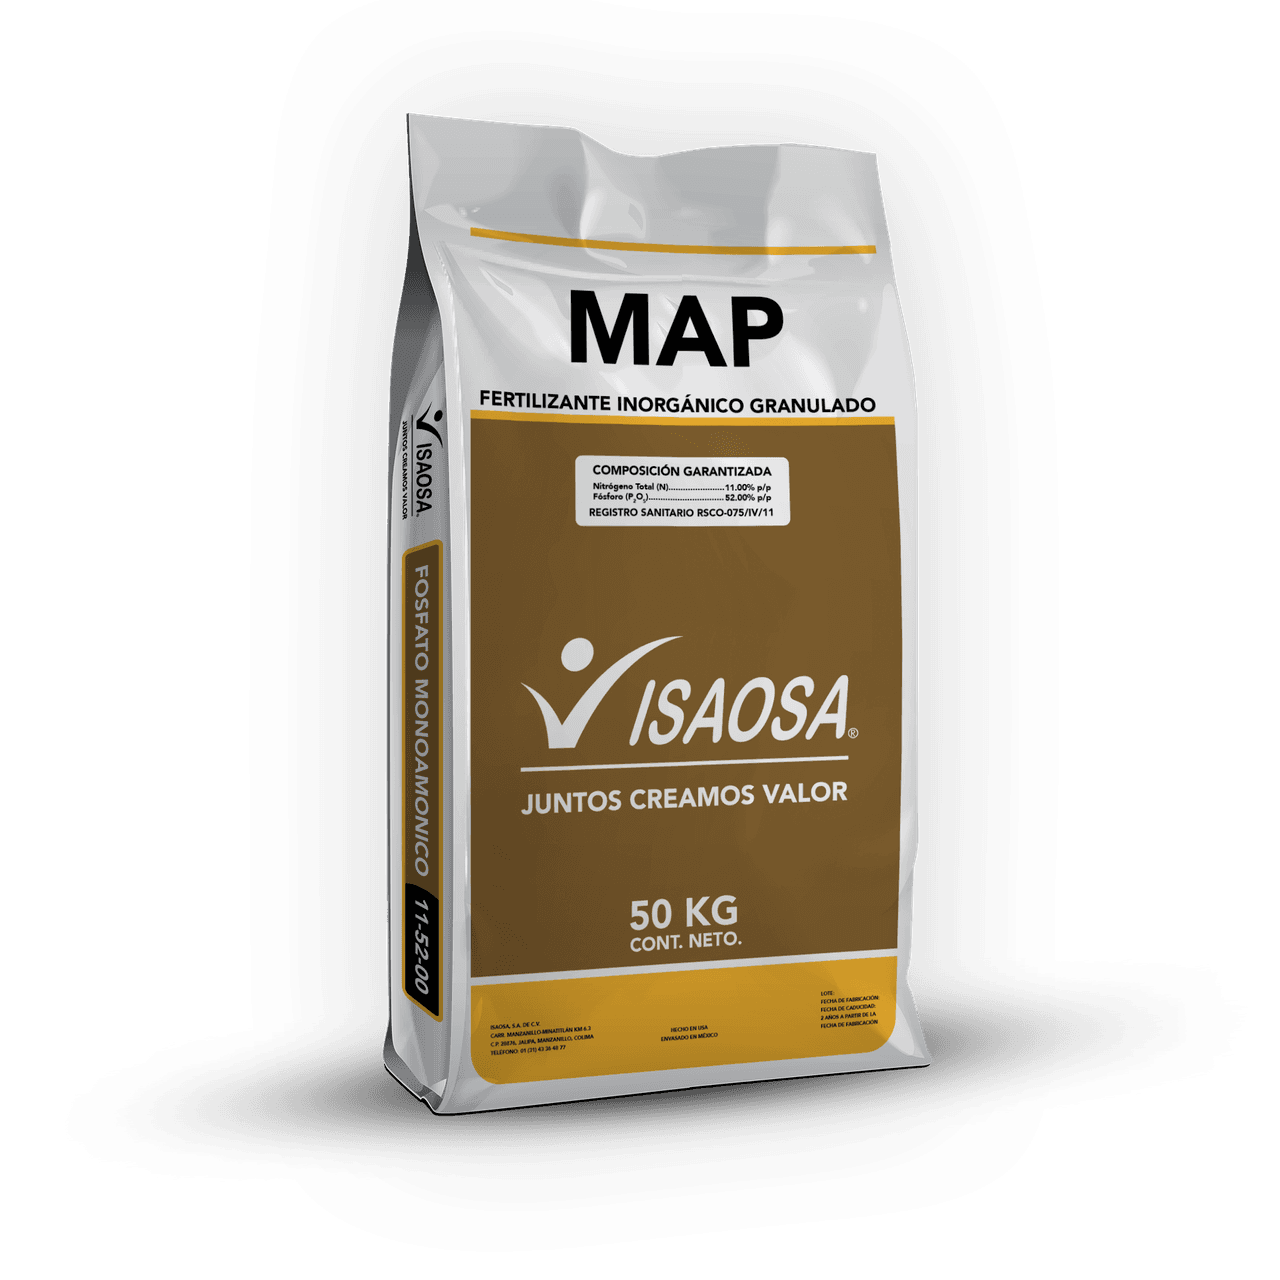 MAP (11-52-00) de ISAOSA